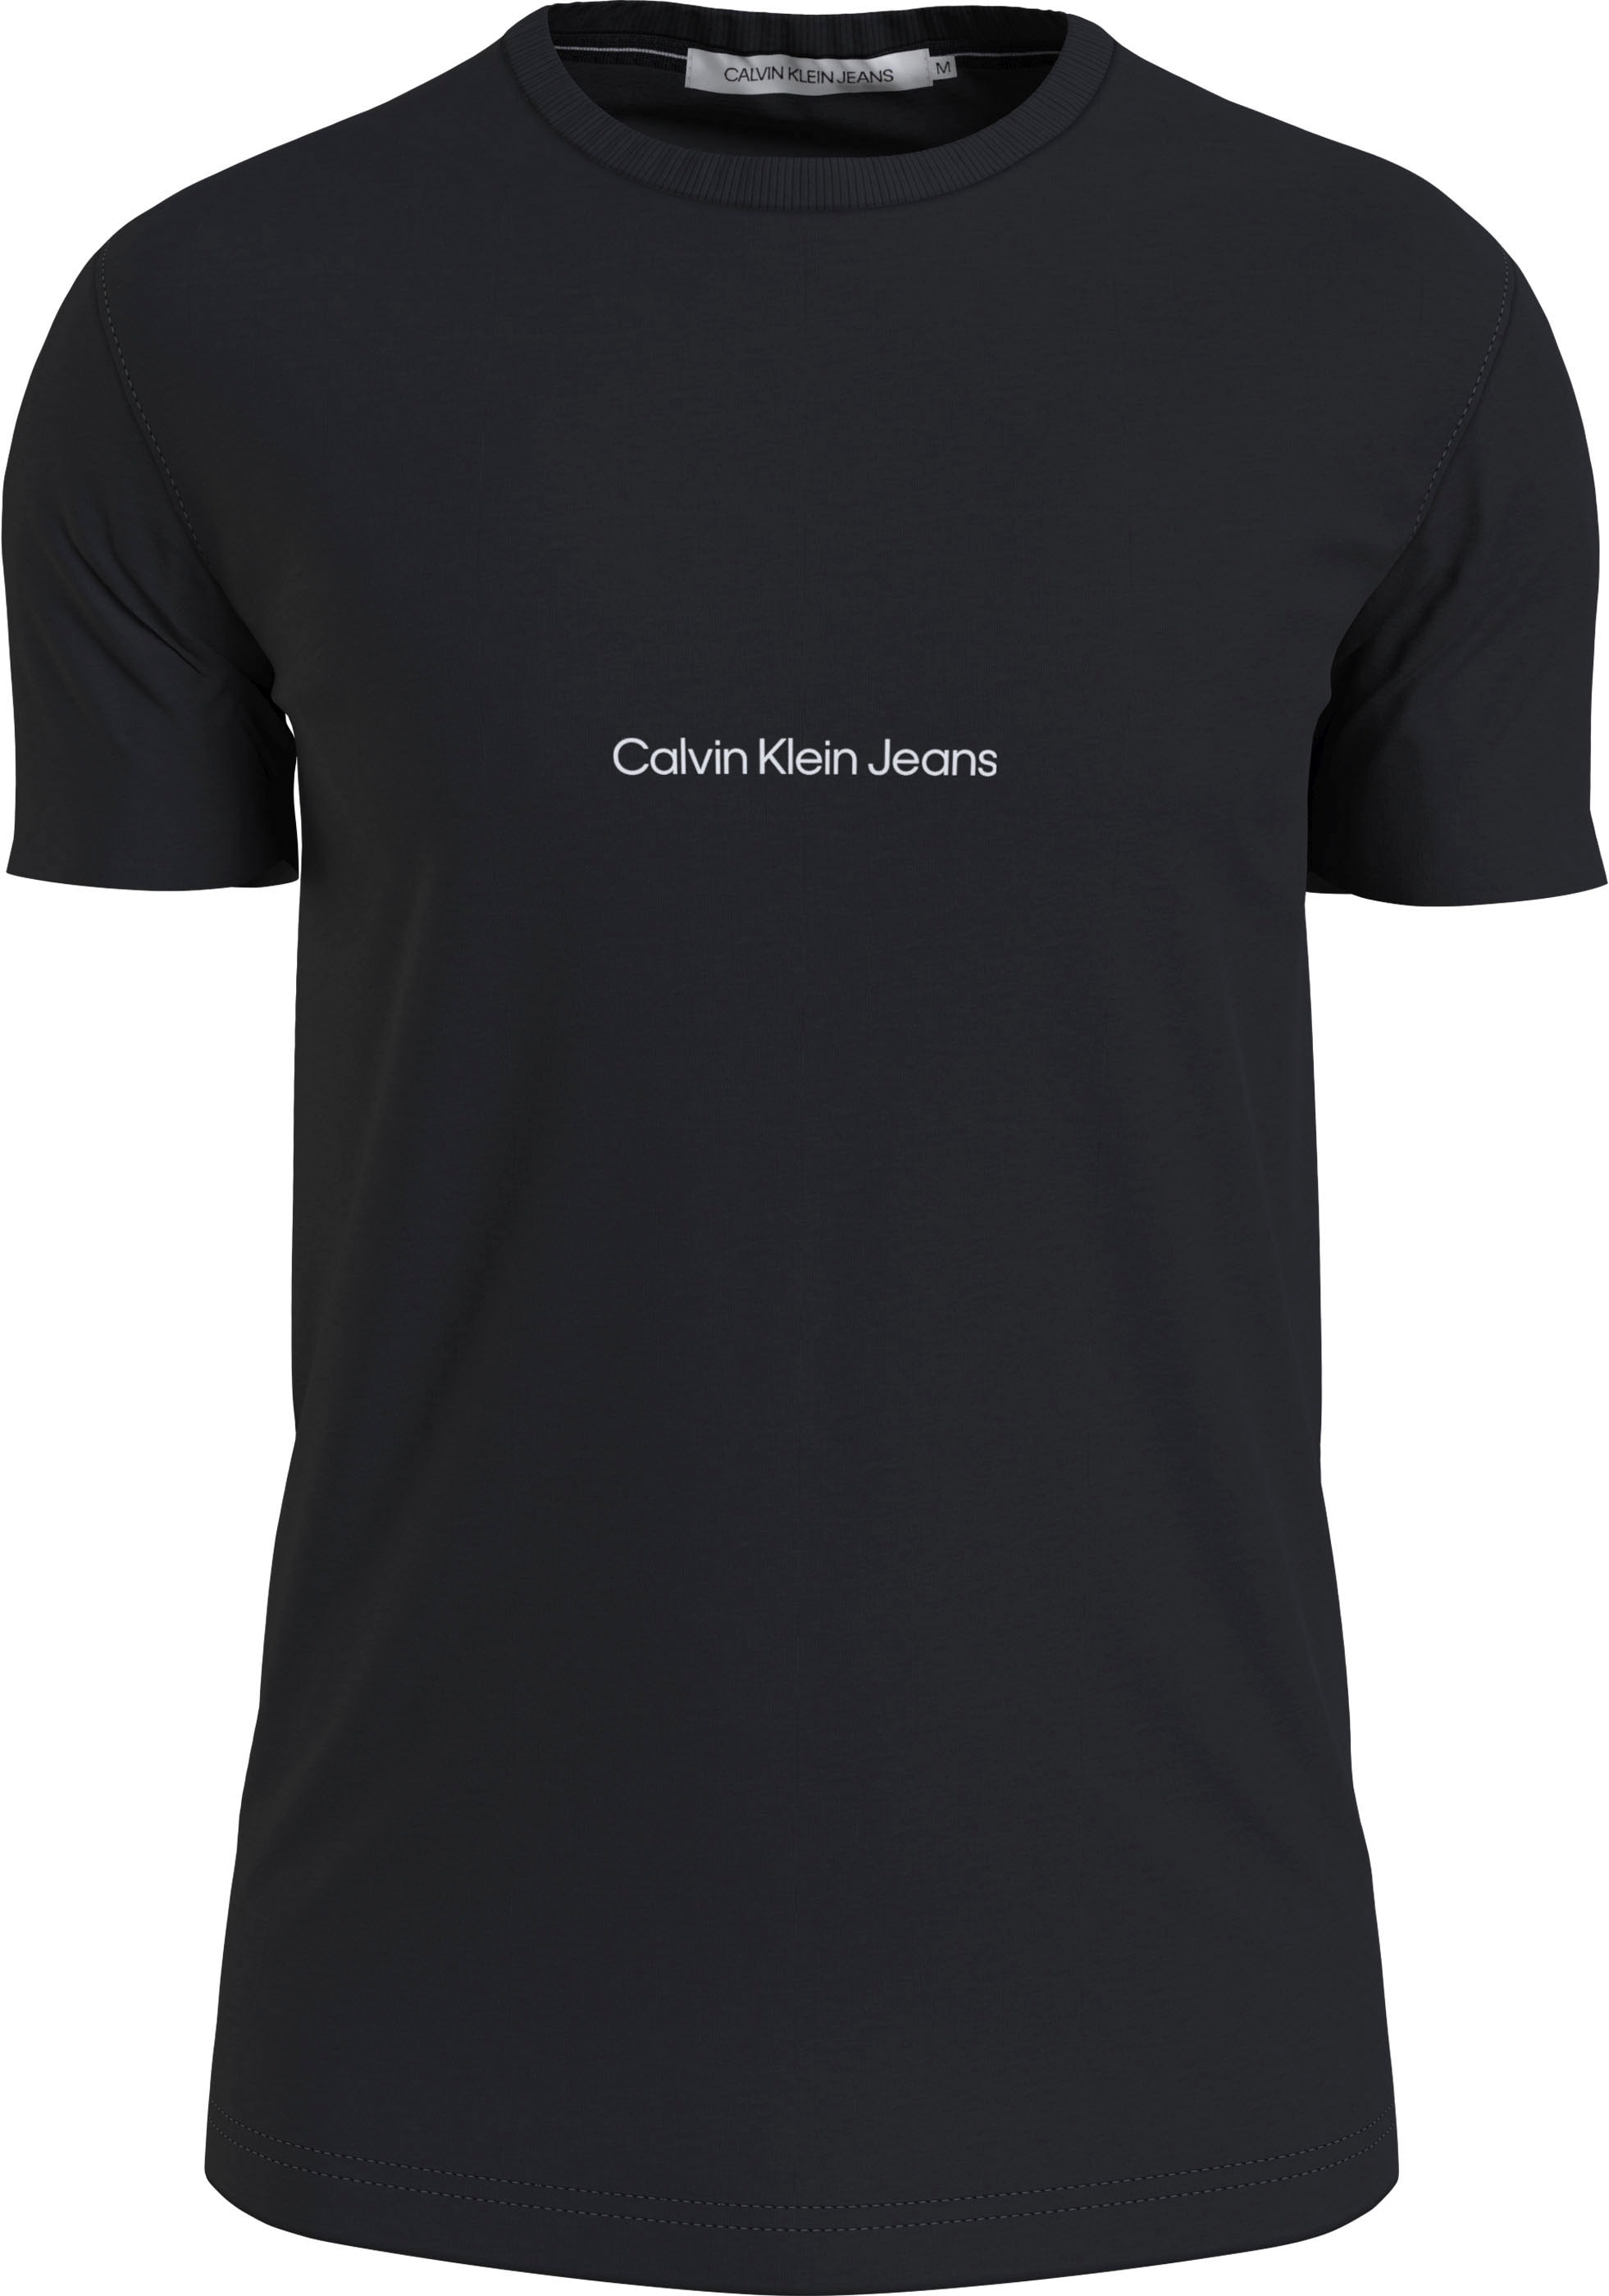 Calvin Klein Jeans Kurzarmshirt, mit Calvin Klein Jeans Logoprint kaufen | Gürtel